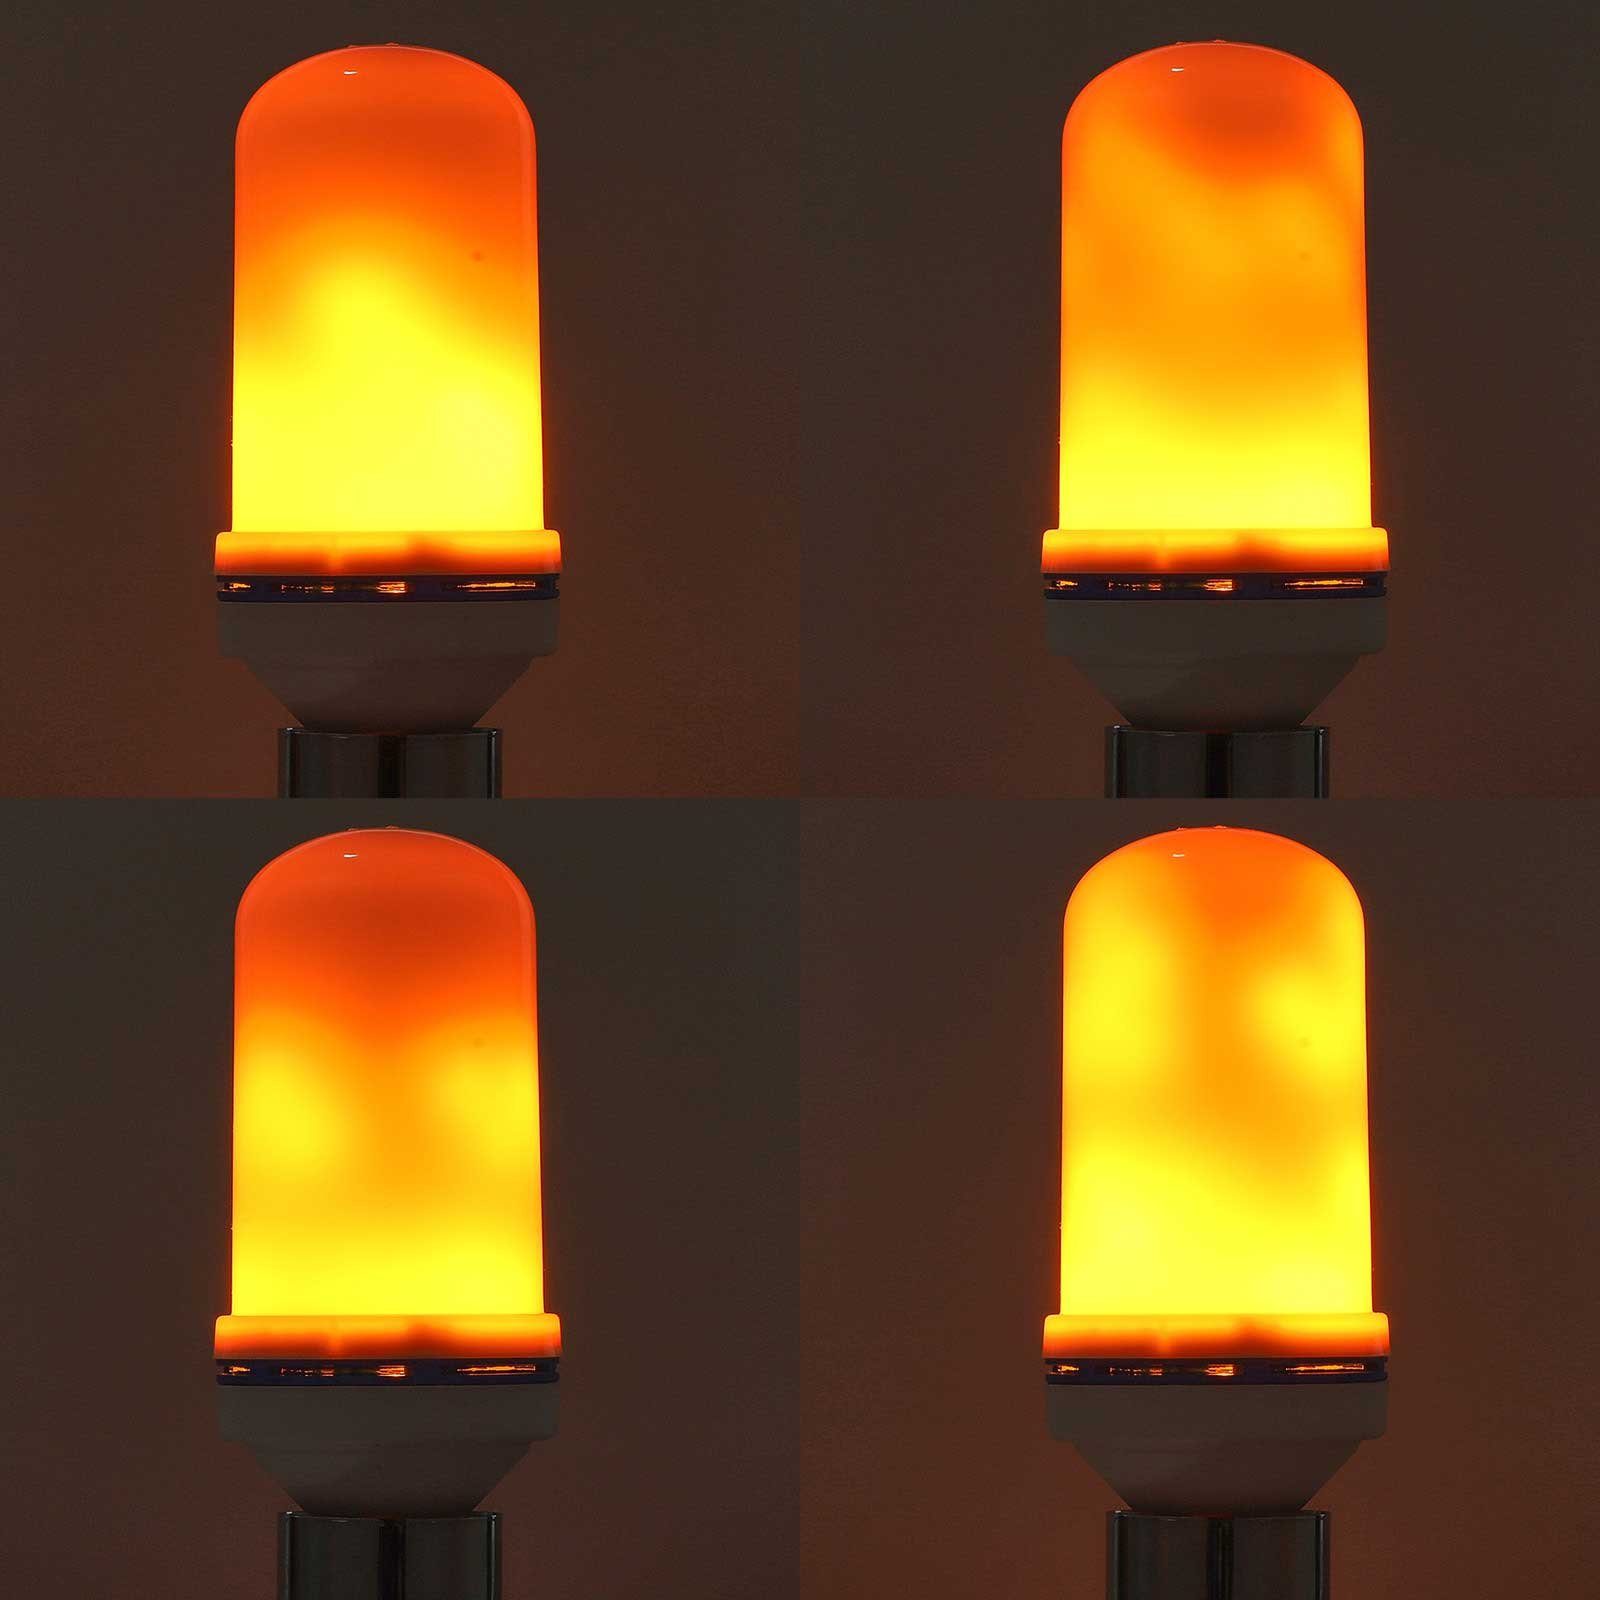 Rosnek LED Dekolicht E27, 4 Modi, für Flammeneffekt, Regenbogen/Gelb/Blau Weihnachten, Halloween